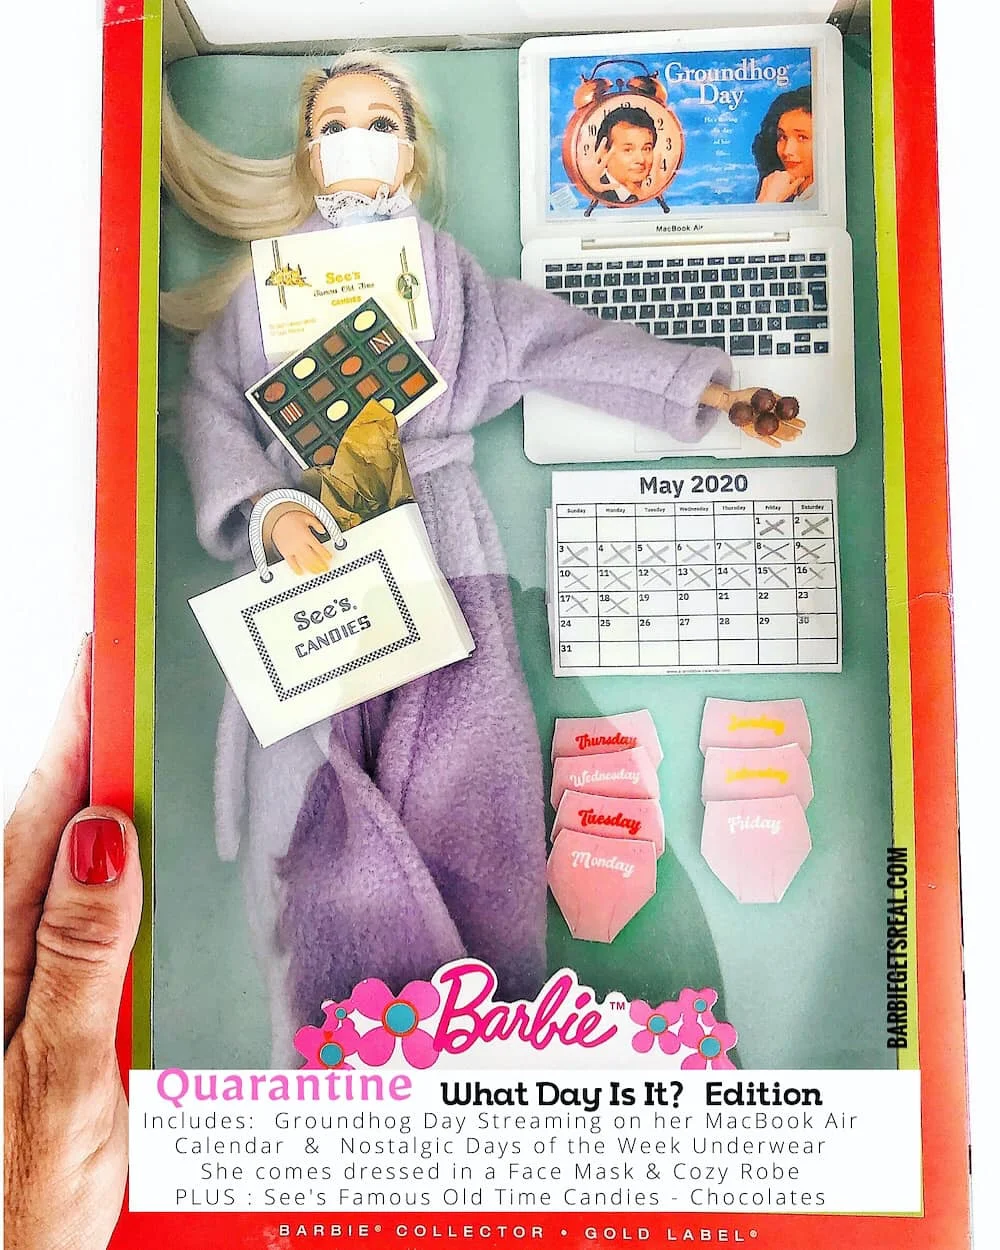 Женщина создала реалистичных кукол Барби, сидящих на карантине – такими их еще не видели - фото 479749